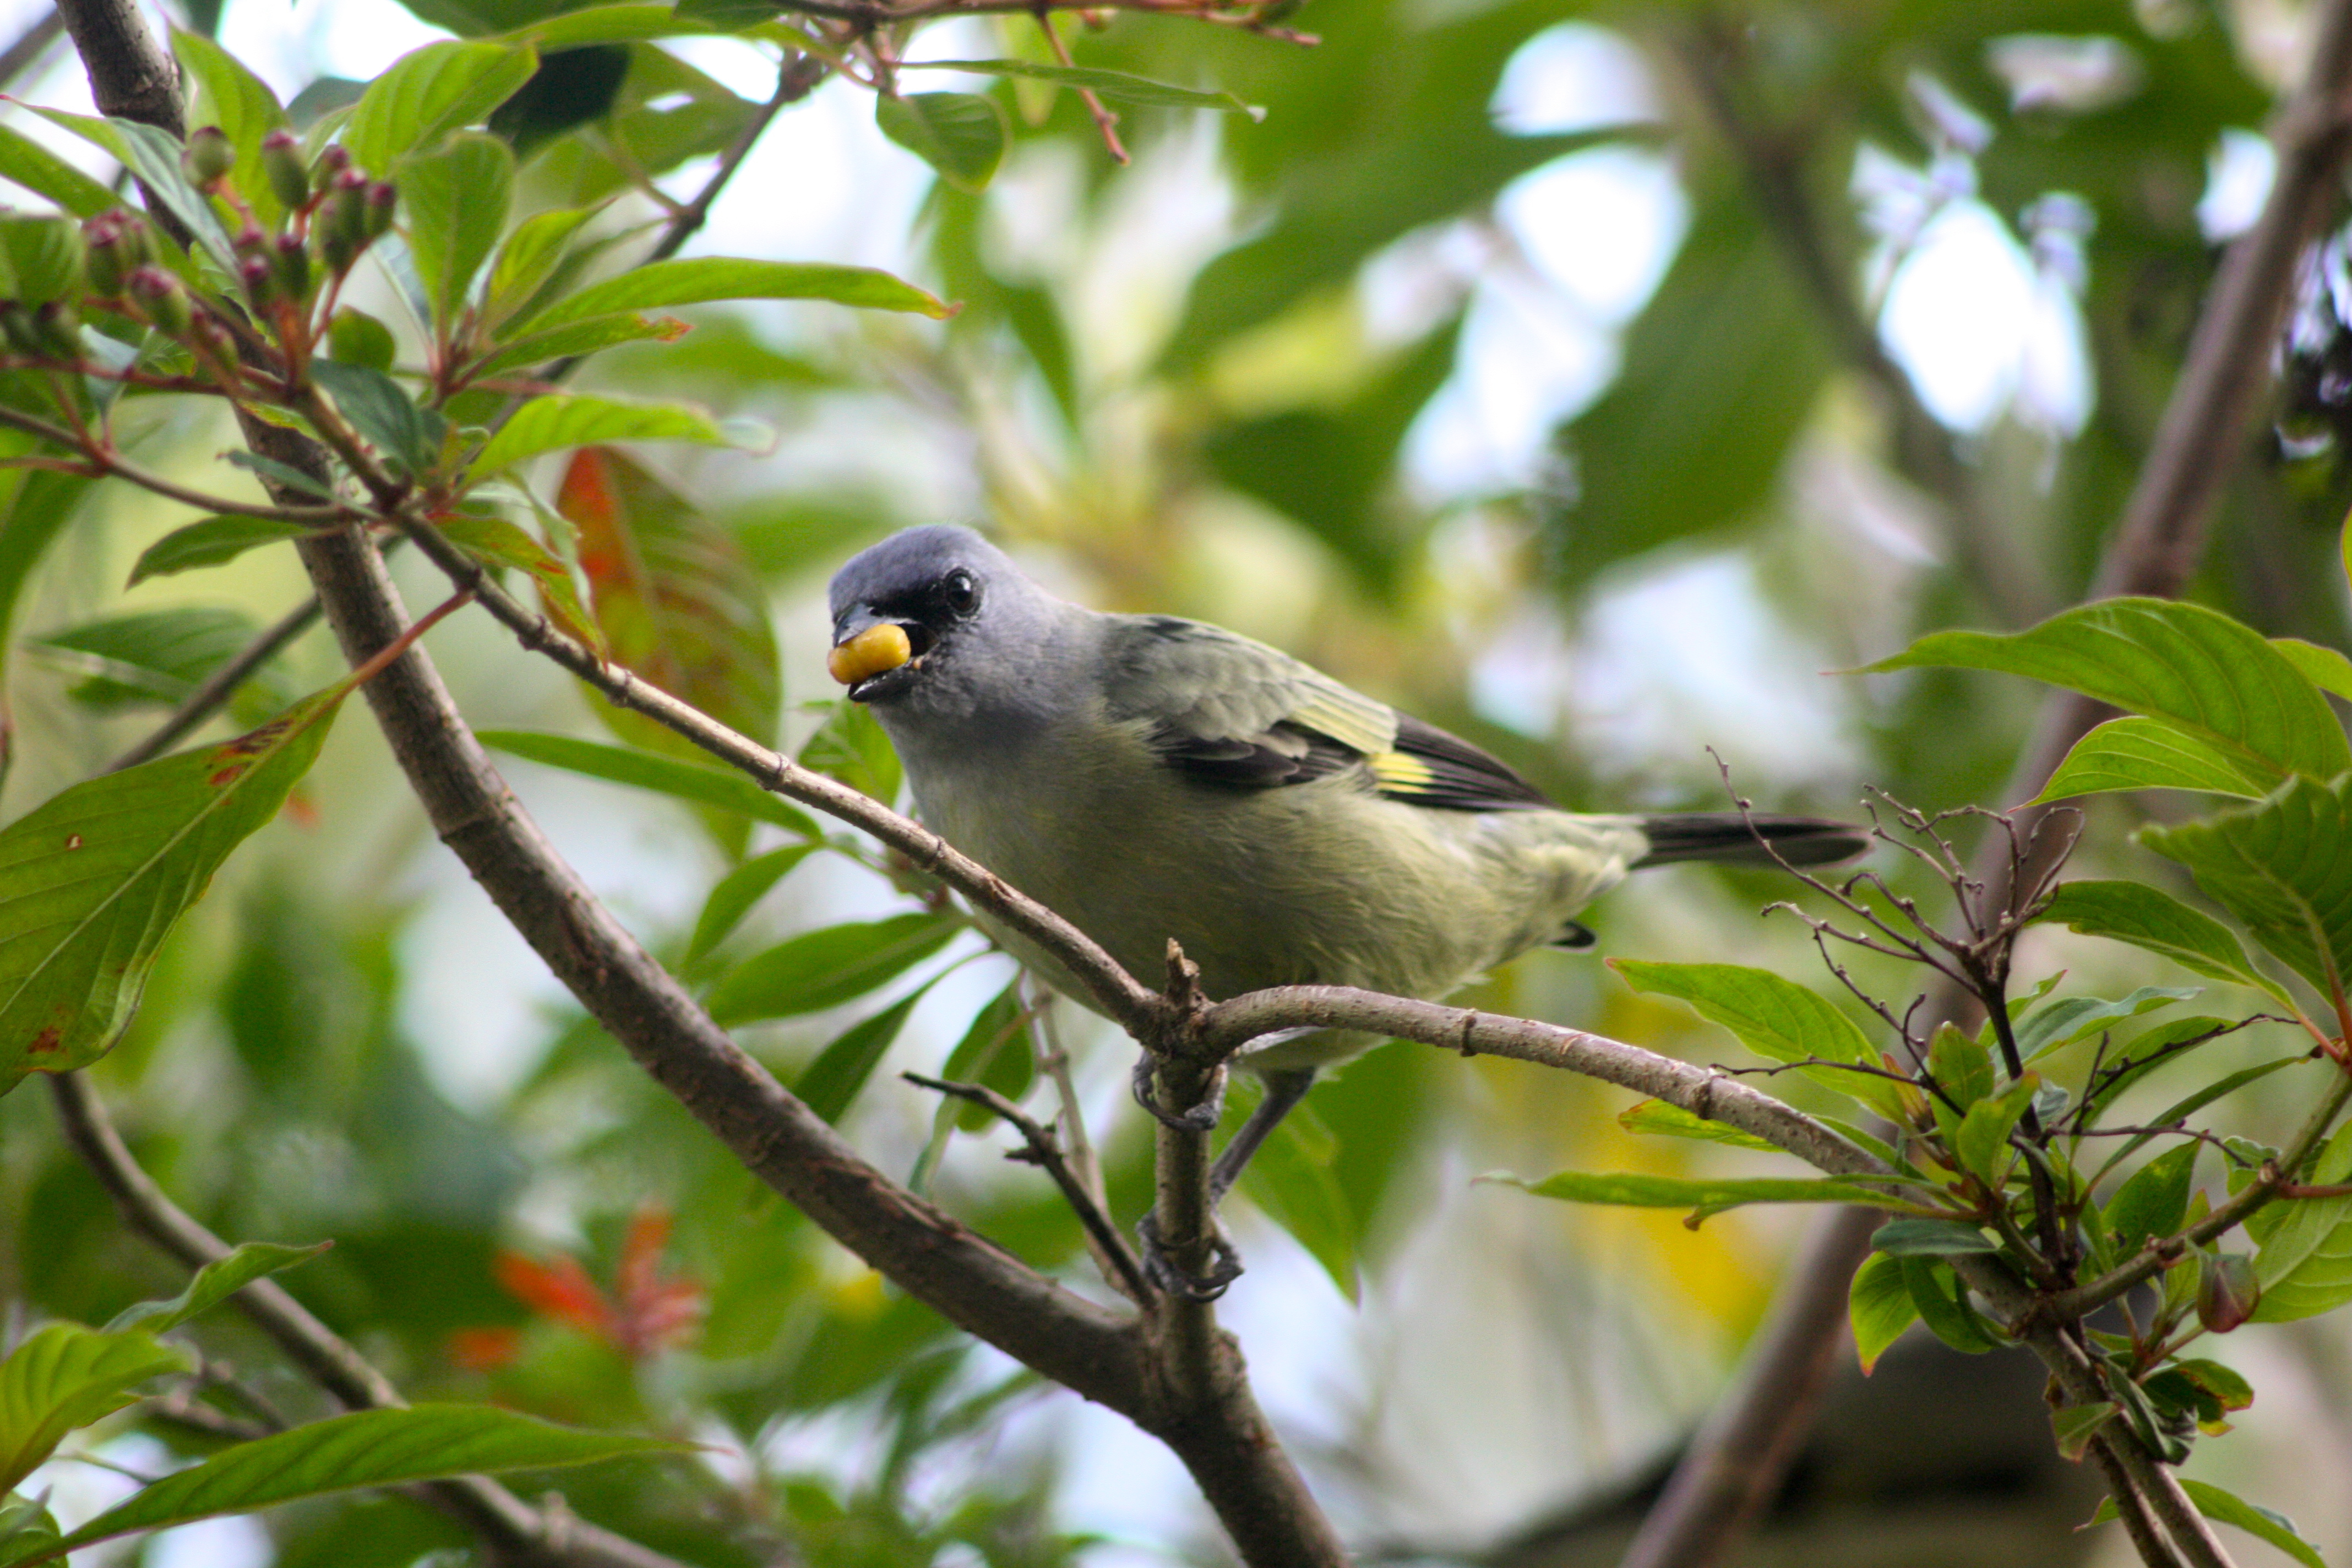 Northern Nicaragua Birding Tours